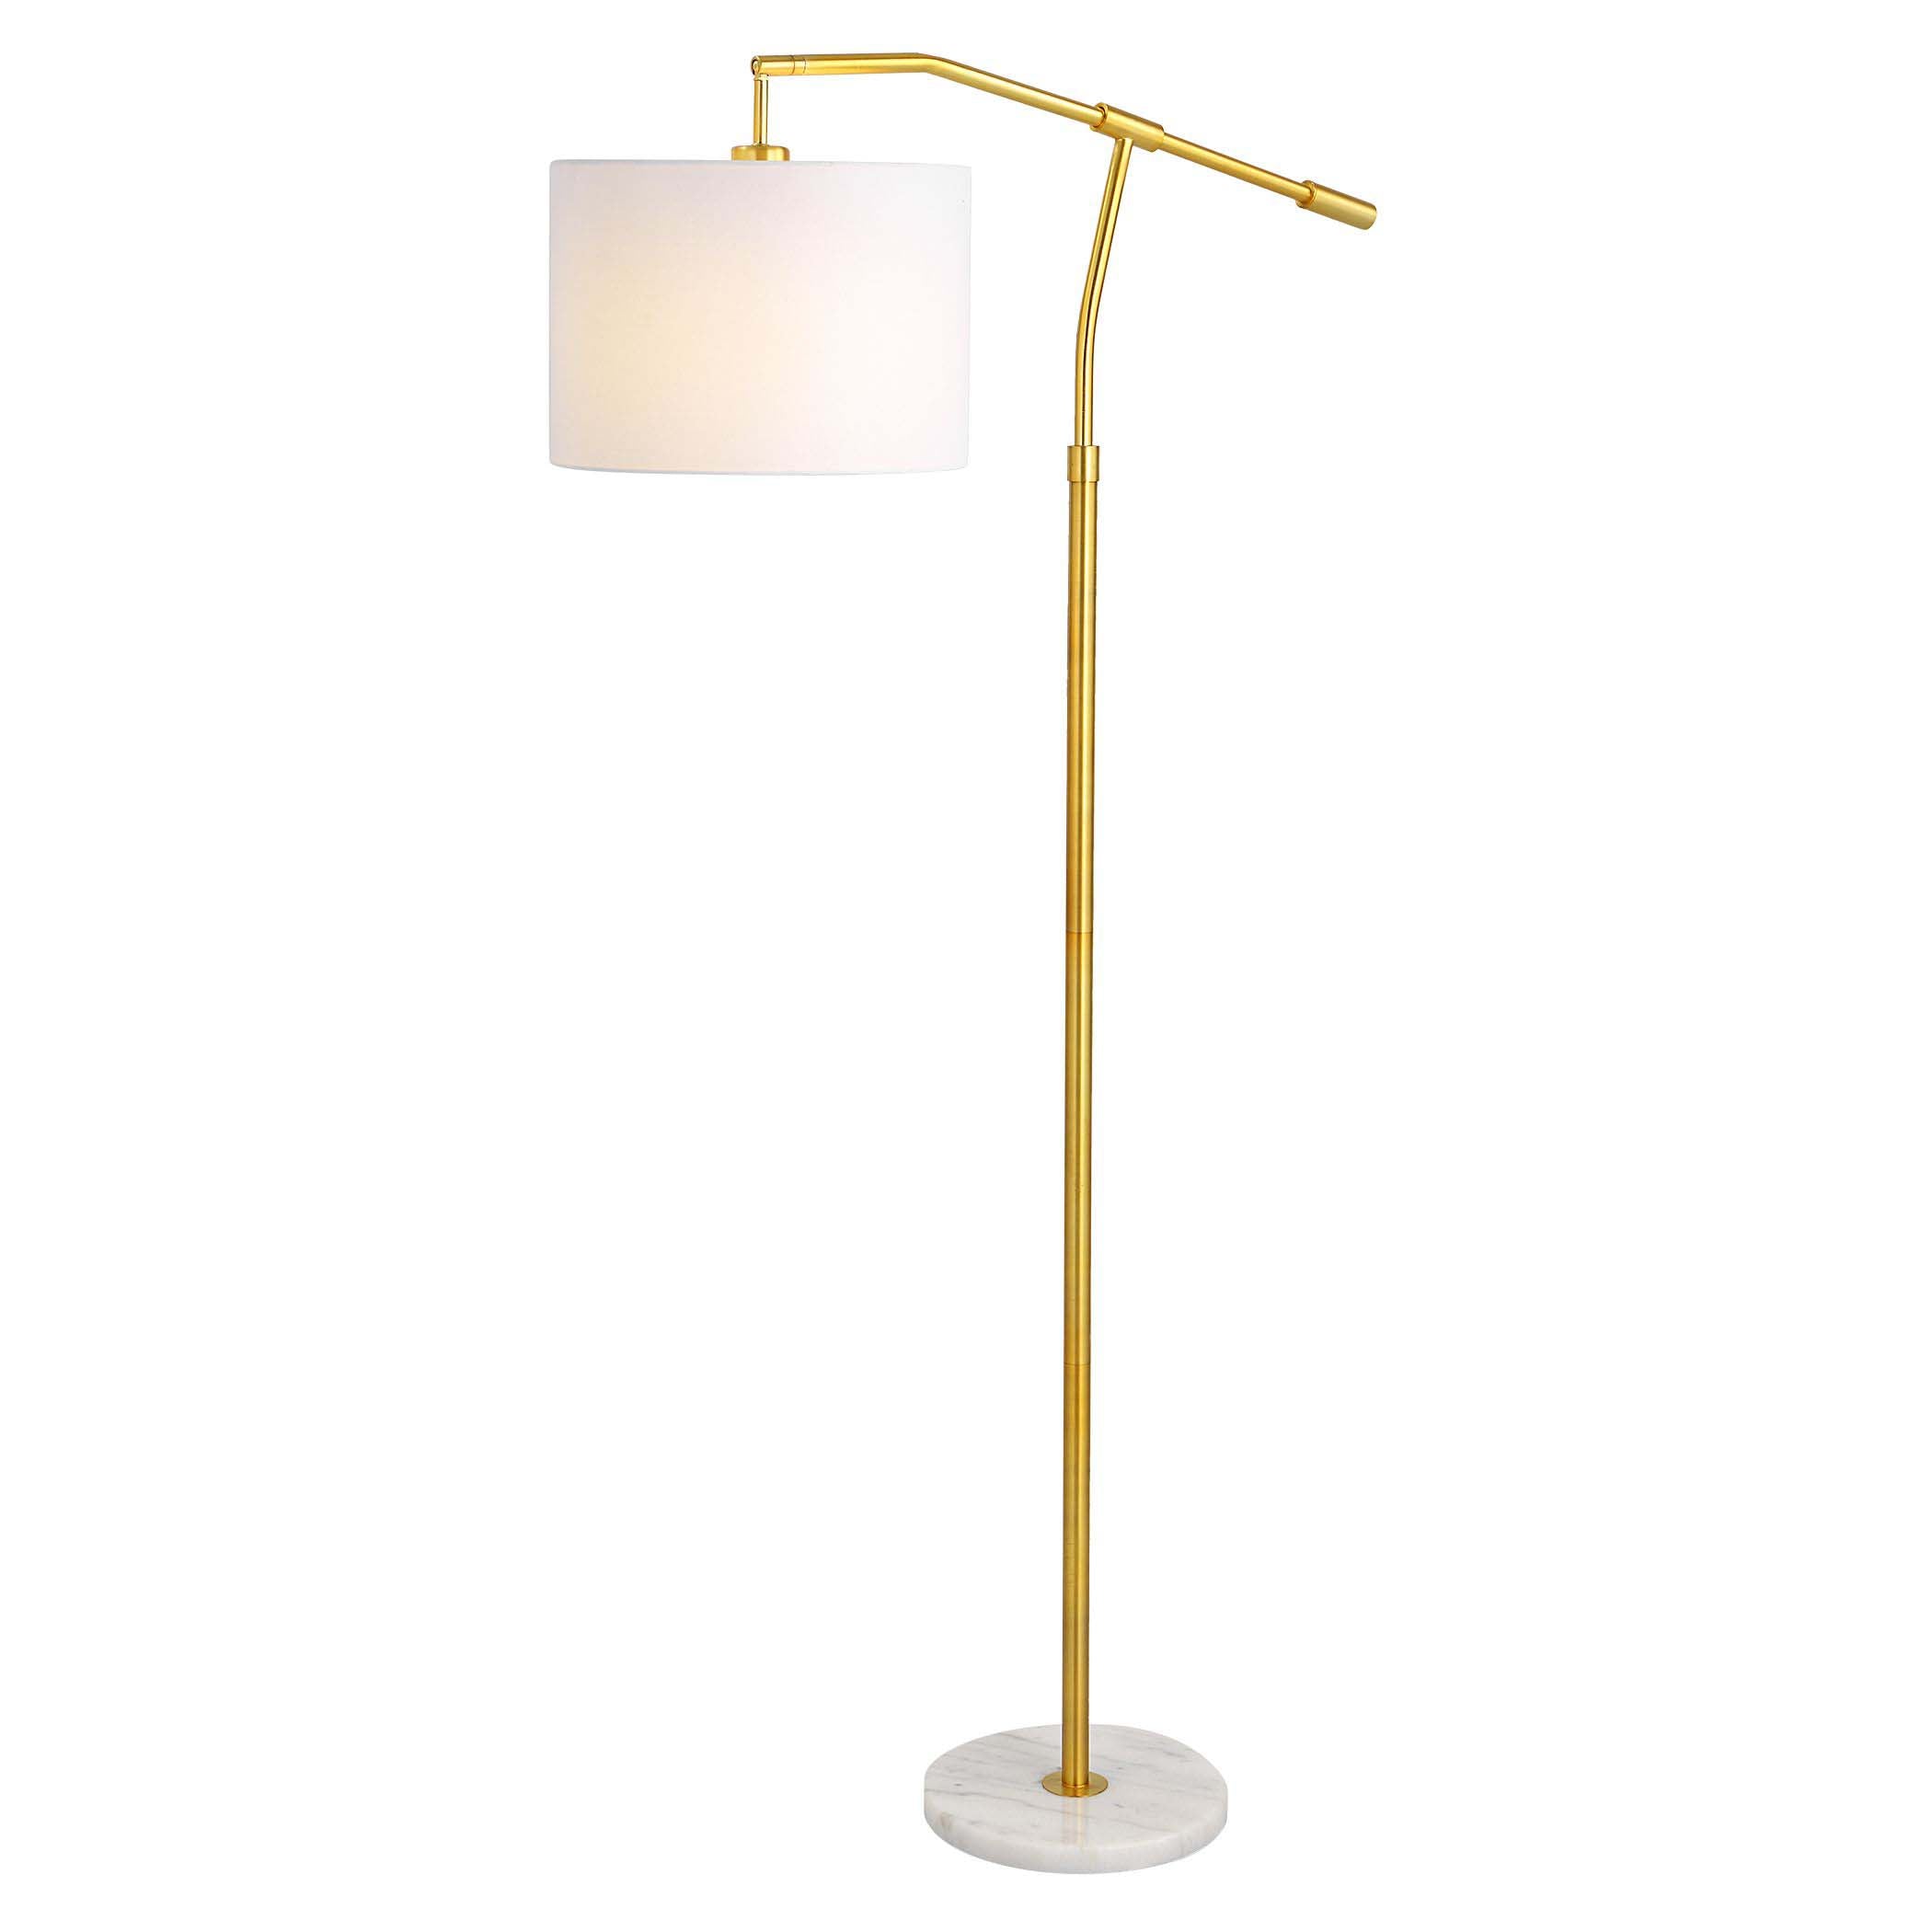 Decor Market Floor Lamp - Gold/White